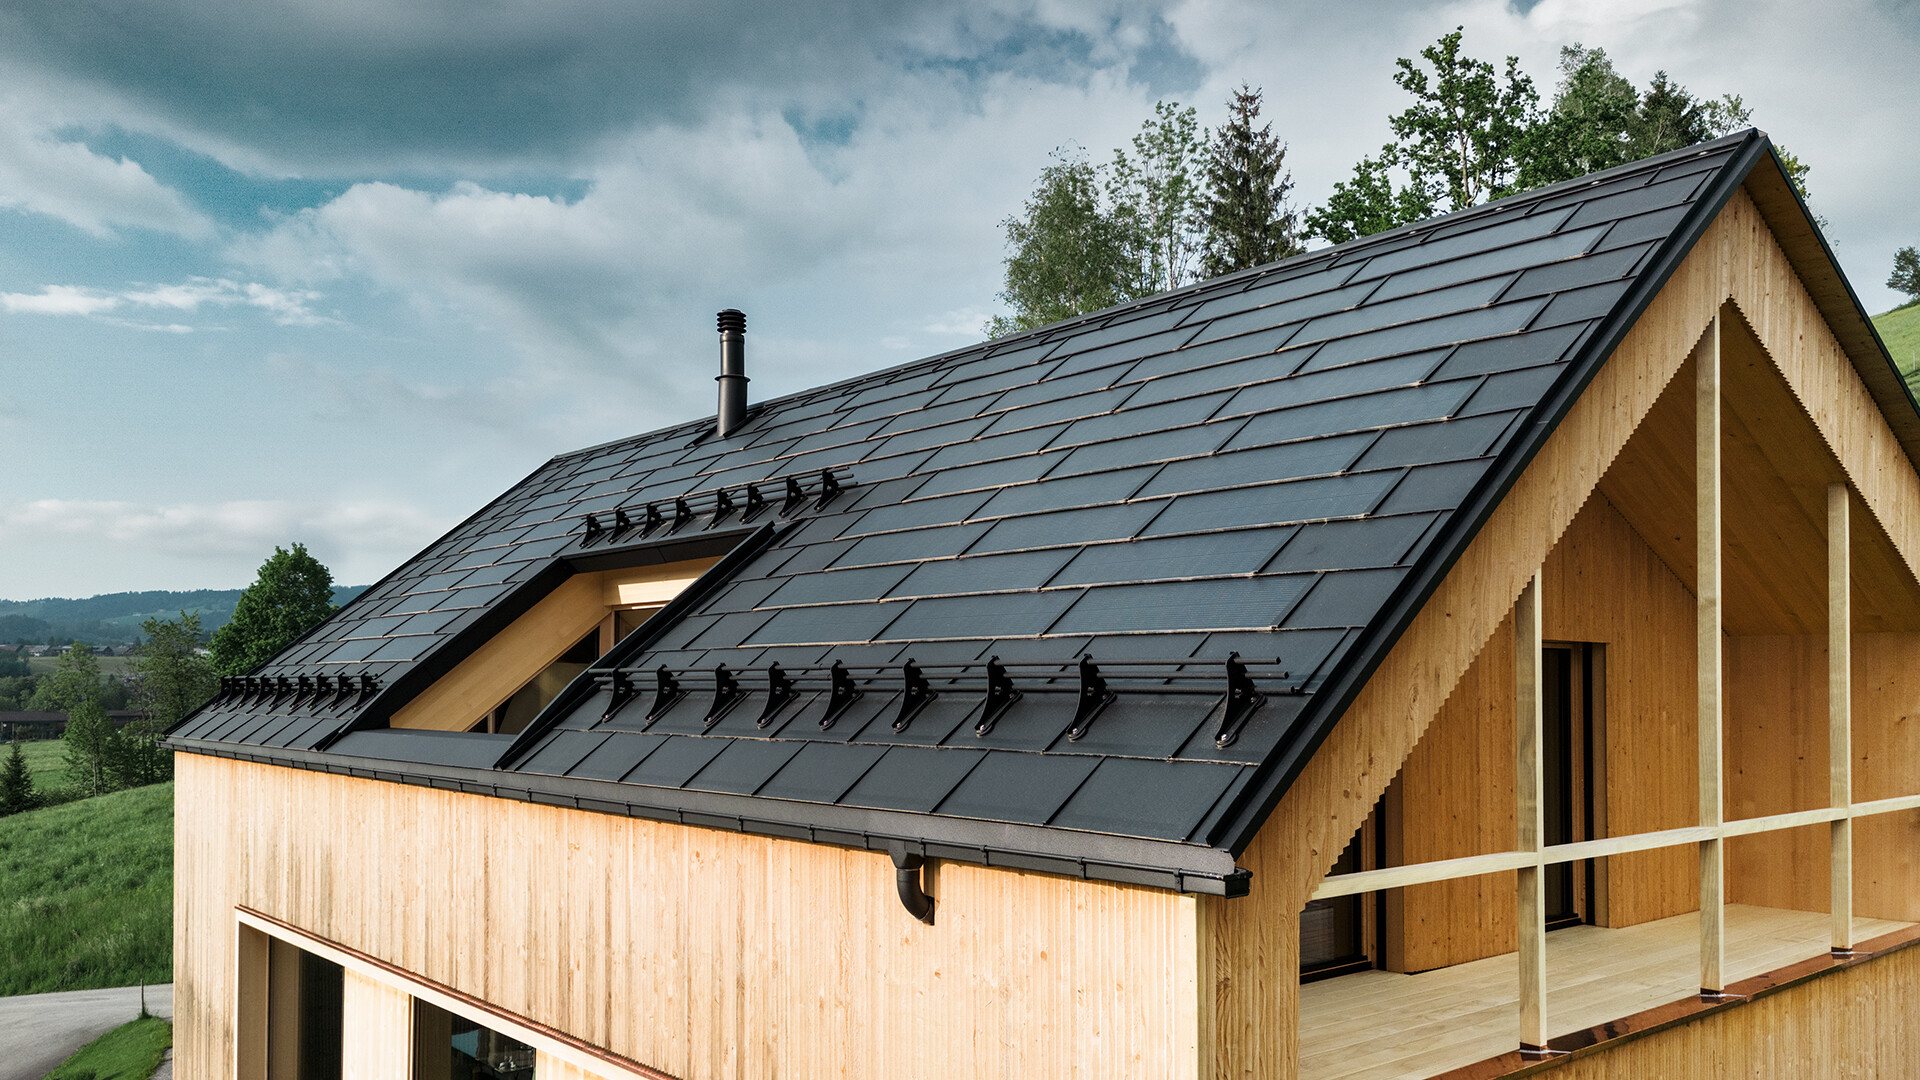 PREFA Solardachplatte in Schwarz auf einem Ökohaus in Egg, Österreich – langlebig, energieeffizient und ästhetisch ansprechend für moderne Architektur. Die innovative Solardachplatte vereint ein sturmsicheres Dach mit einer Photovoltaikanlage. Die integrierten PV-Module fügen sich harmonisch am Dach des Einfamilienhauses ein.